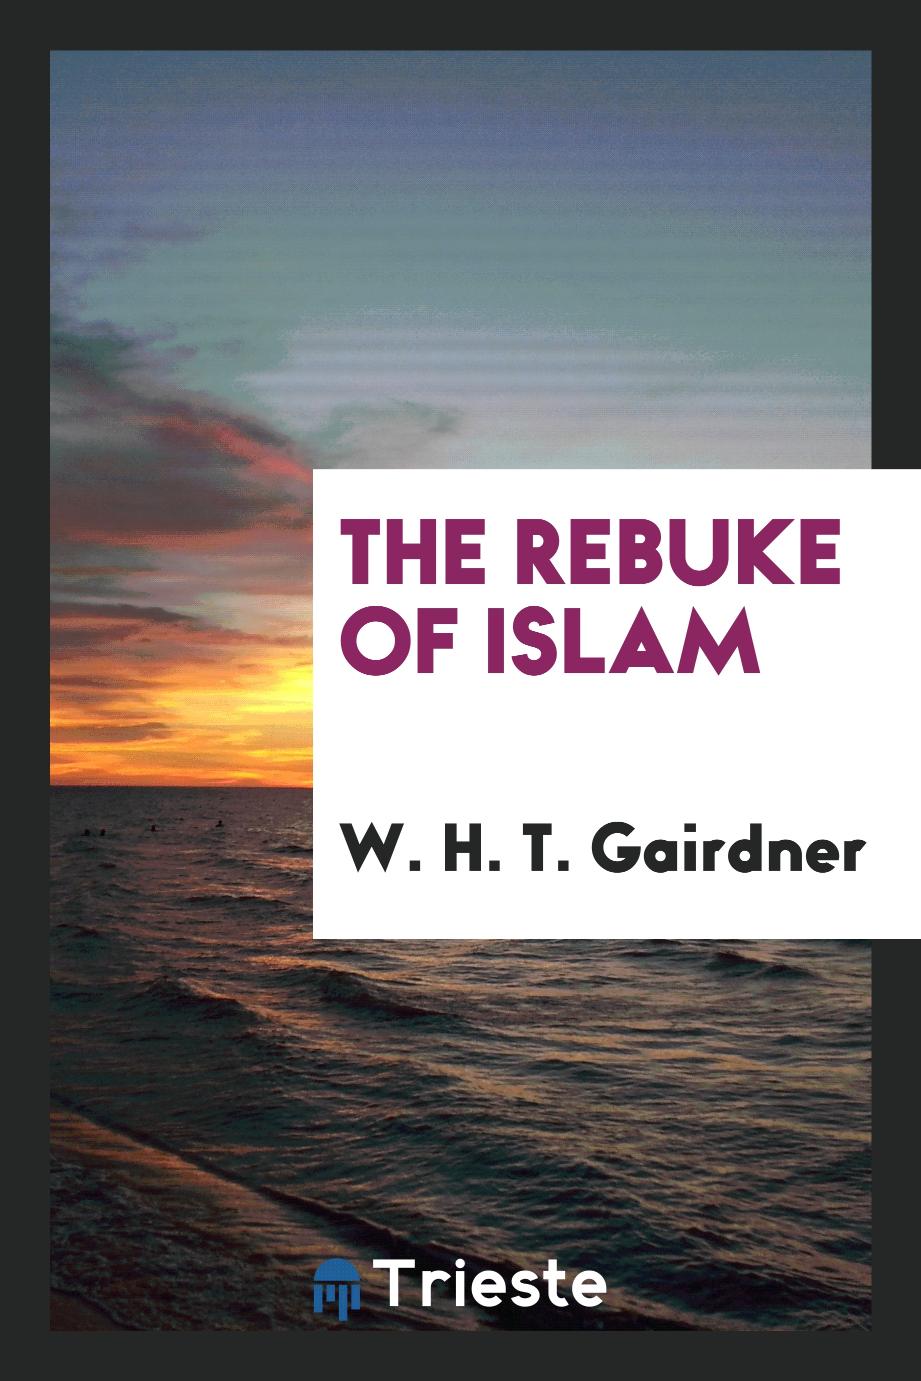 The rebuke of Islam